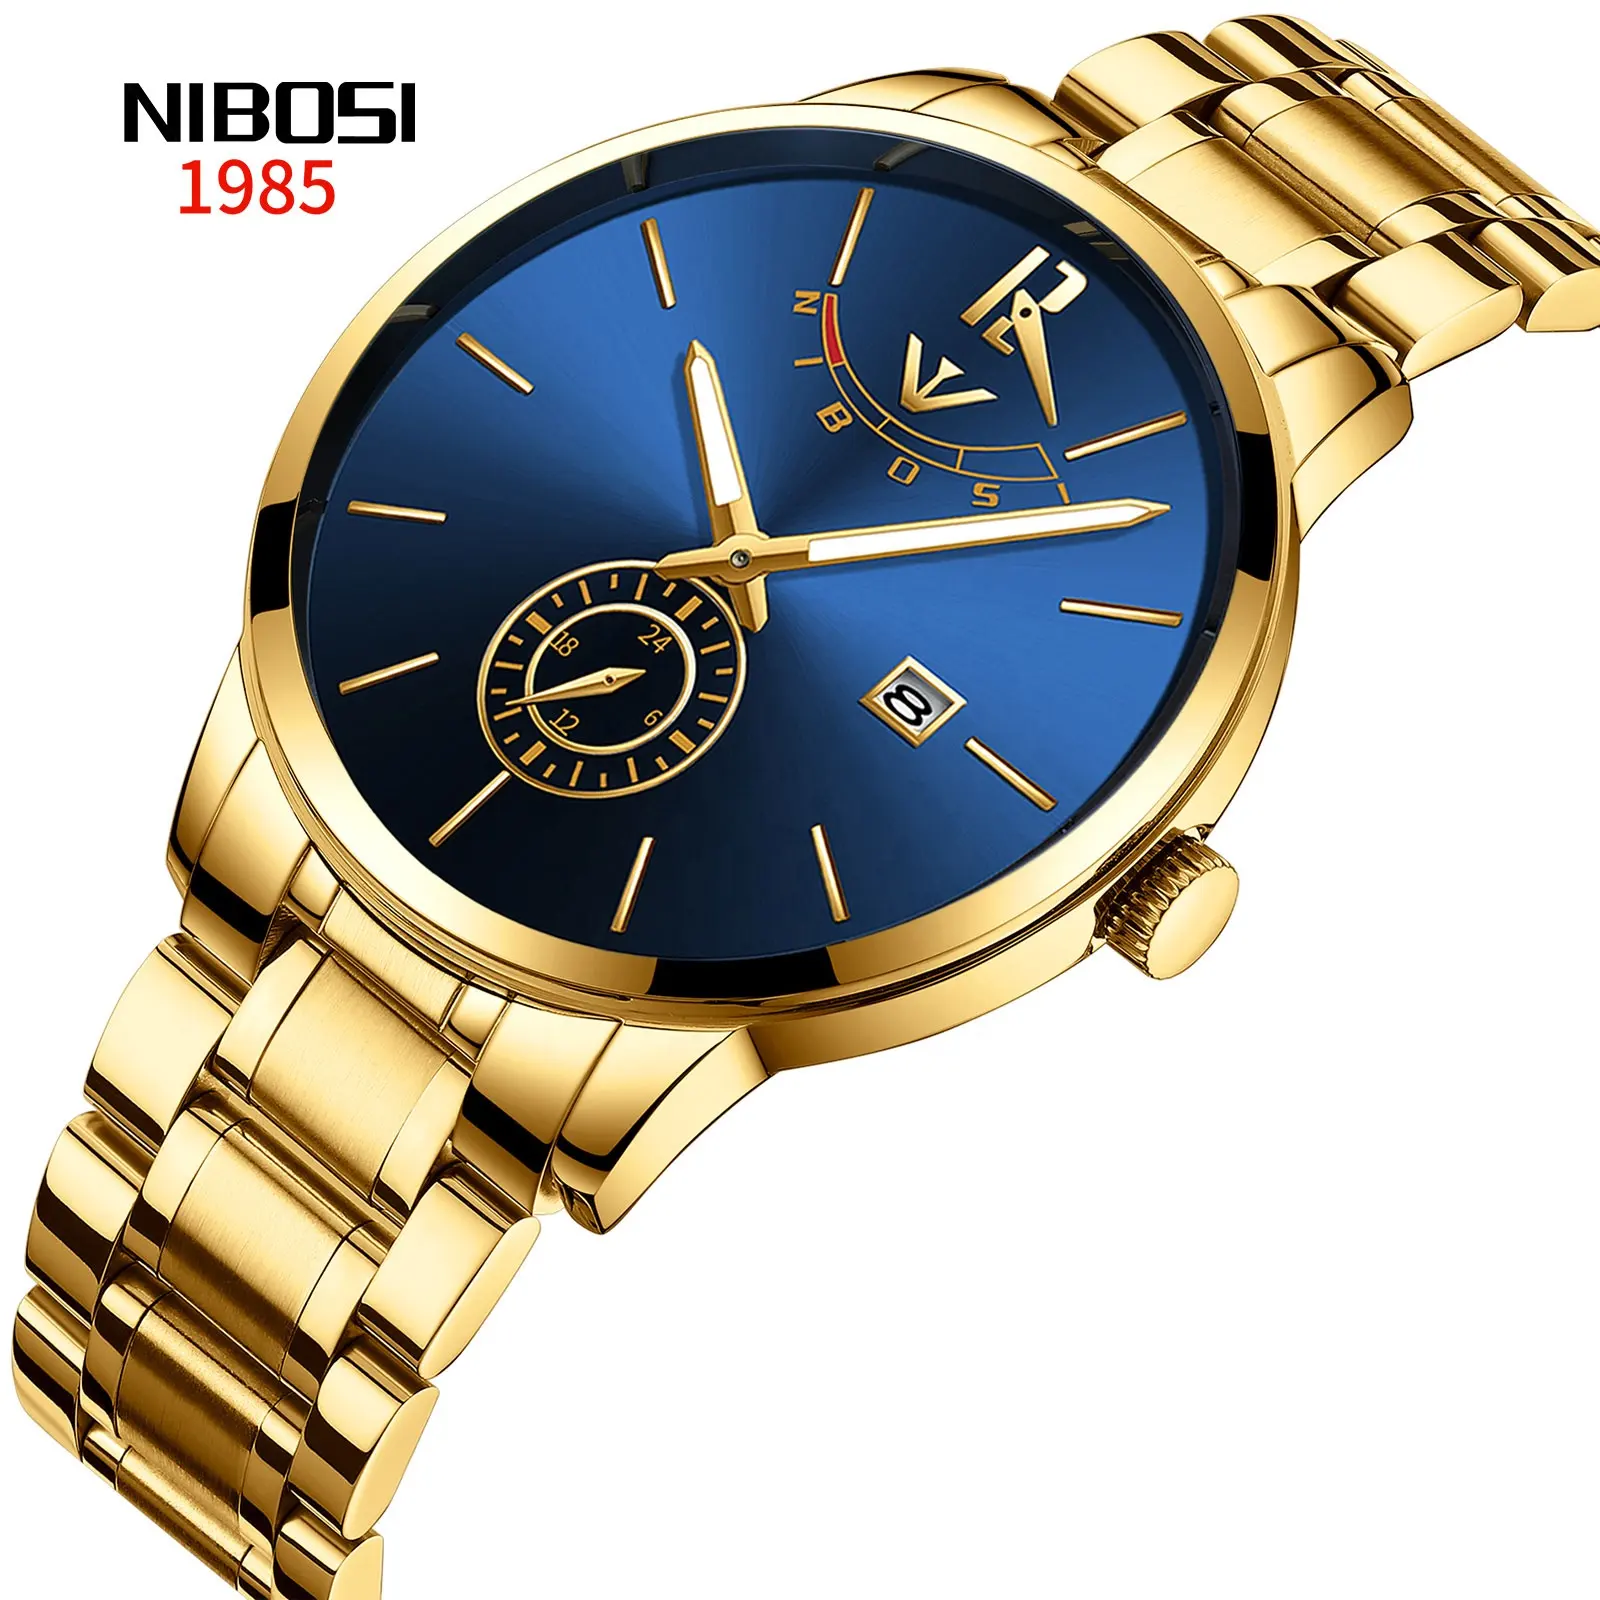 Frete Grátis NIBOSI 2318 inoxidável relógio de ouro Relógios Top Marca de Luxo relógio Do Esporte De Quartzo de Negócios de ouro relógio de Pulso À Prova D' Água